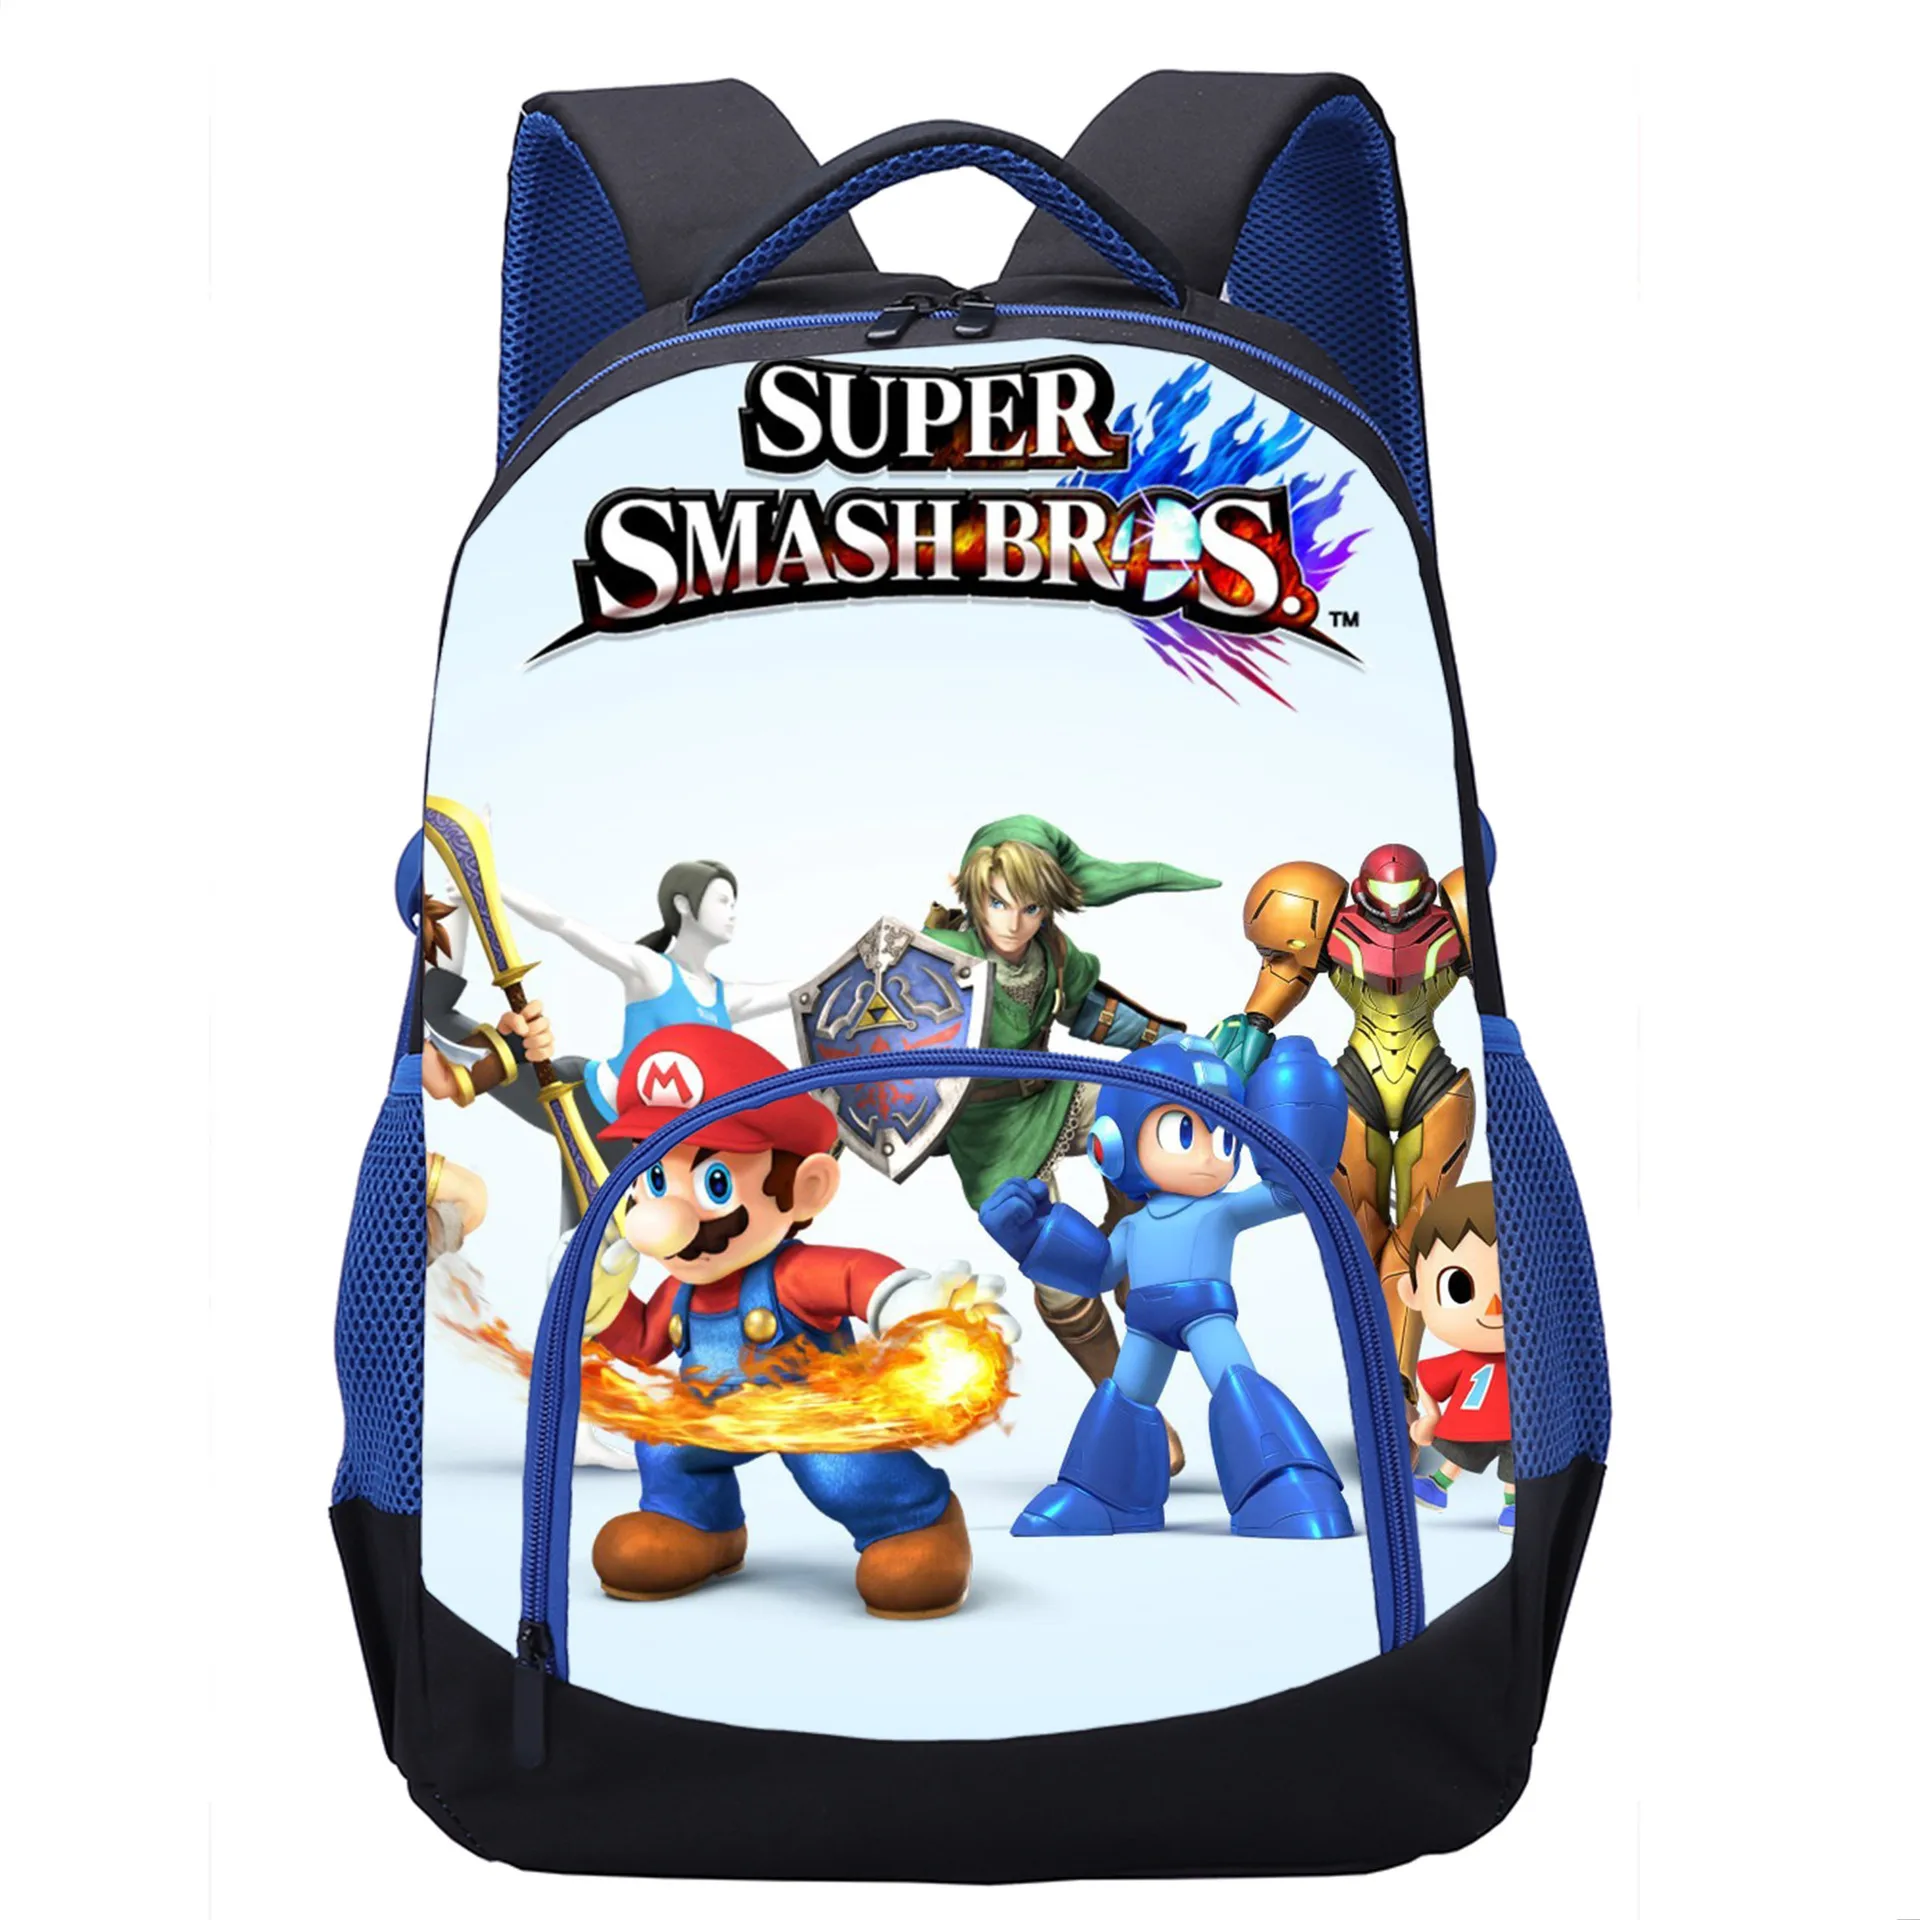 

New Anime Mario Bros High Capacity Waterproof Backpack Cartoon Cute Printing with Side Pocket Internal Interval Kids School Bag